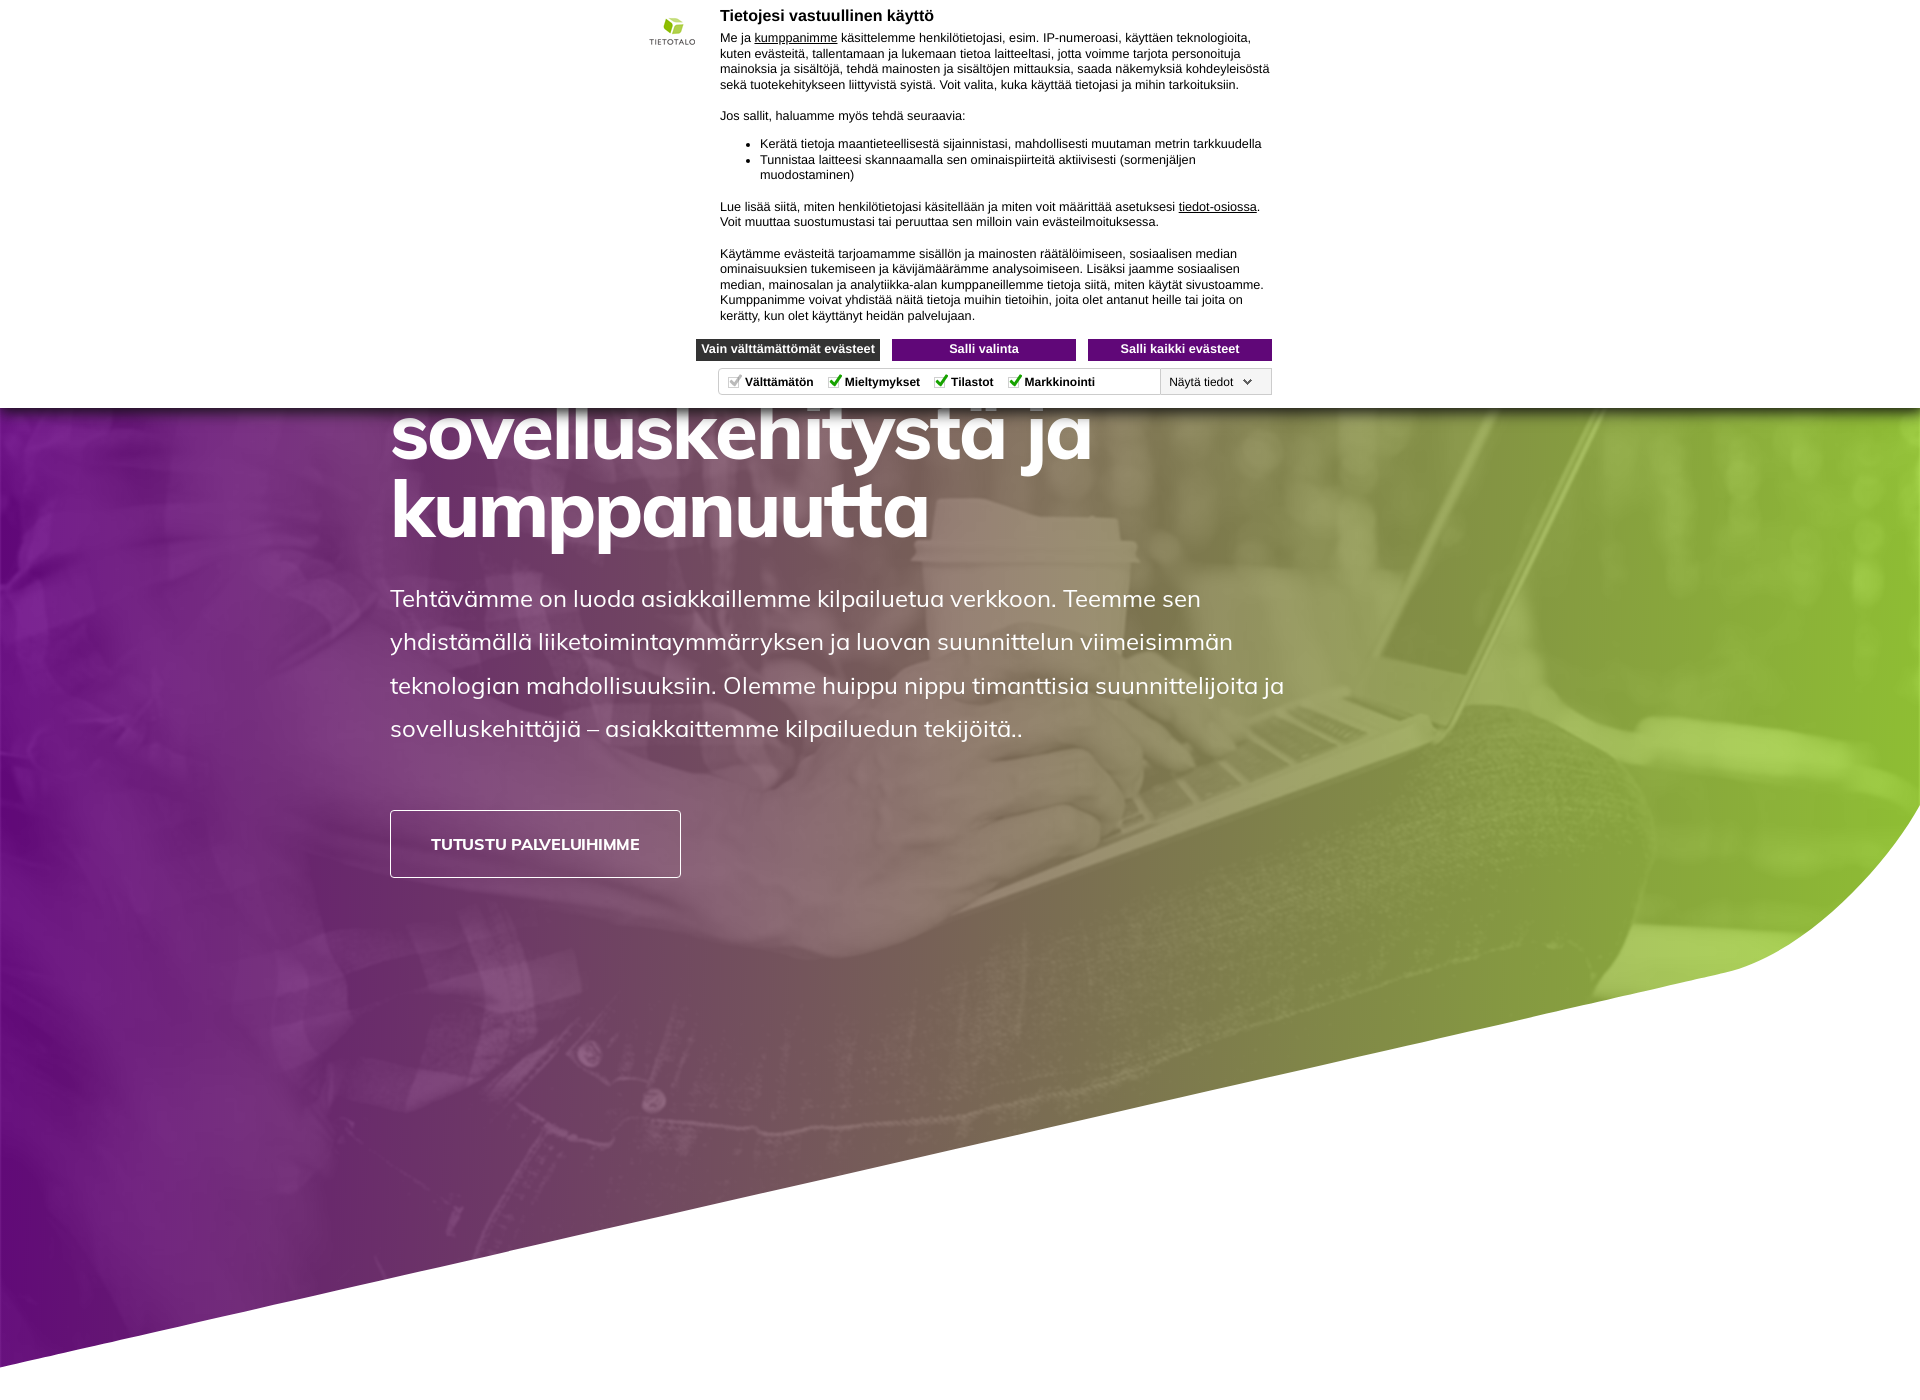 Skärmdump för tietotalo.fi